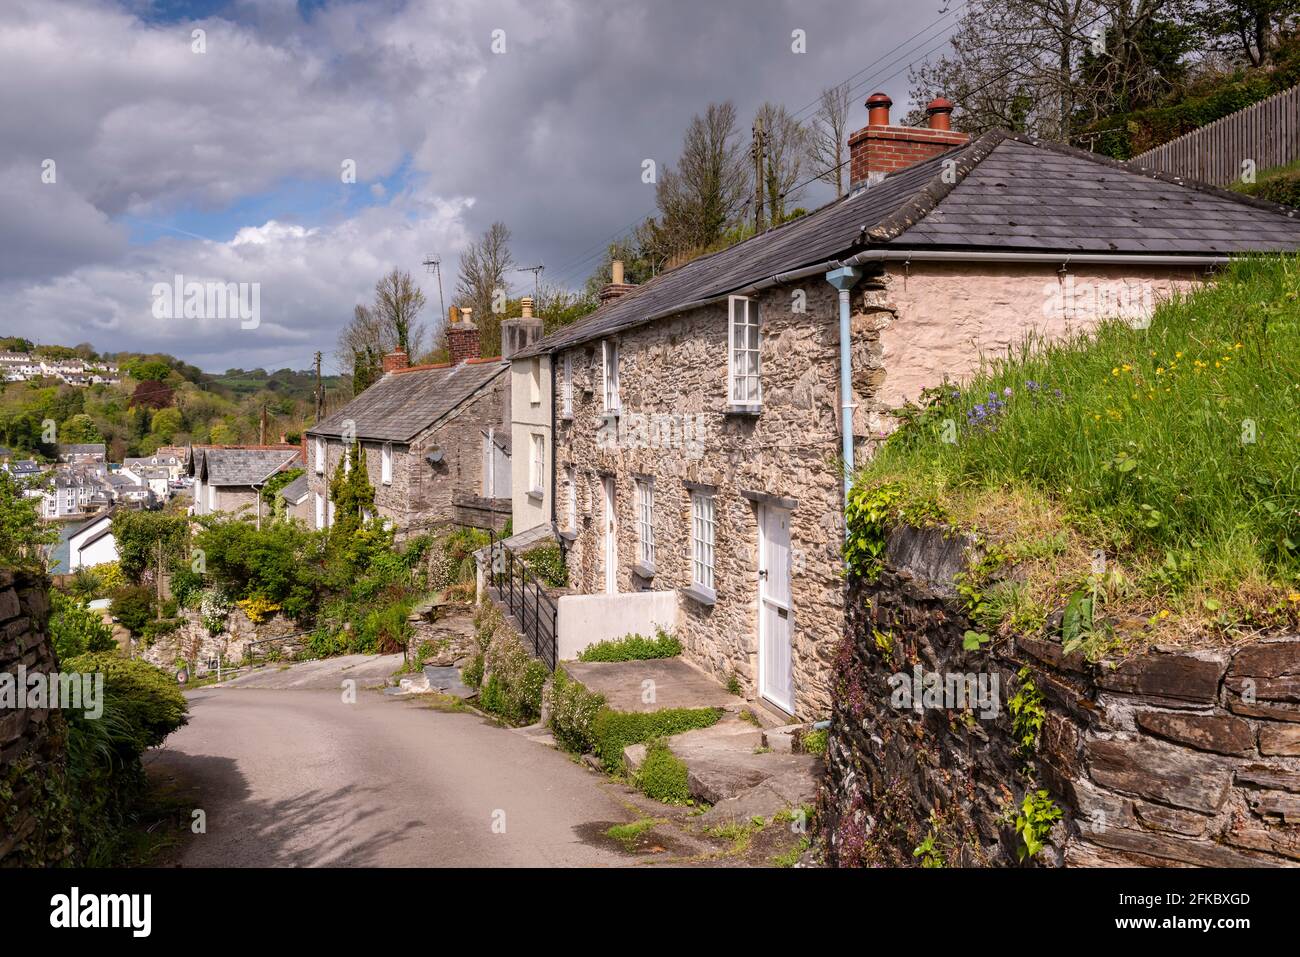 Jolies cottages au printemps dans le village cornish de Bodinnick près de Fowey, Cornouailles, Angleterre, Royaume-Uni, Europe Banque D'Images